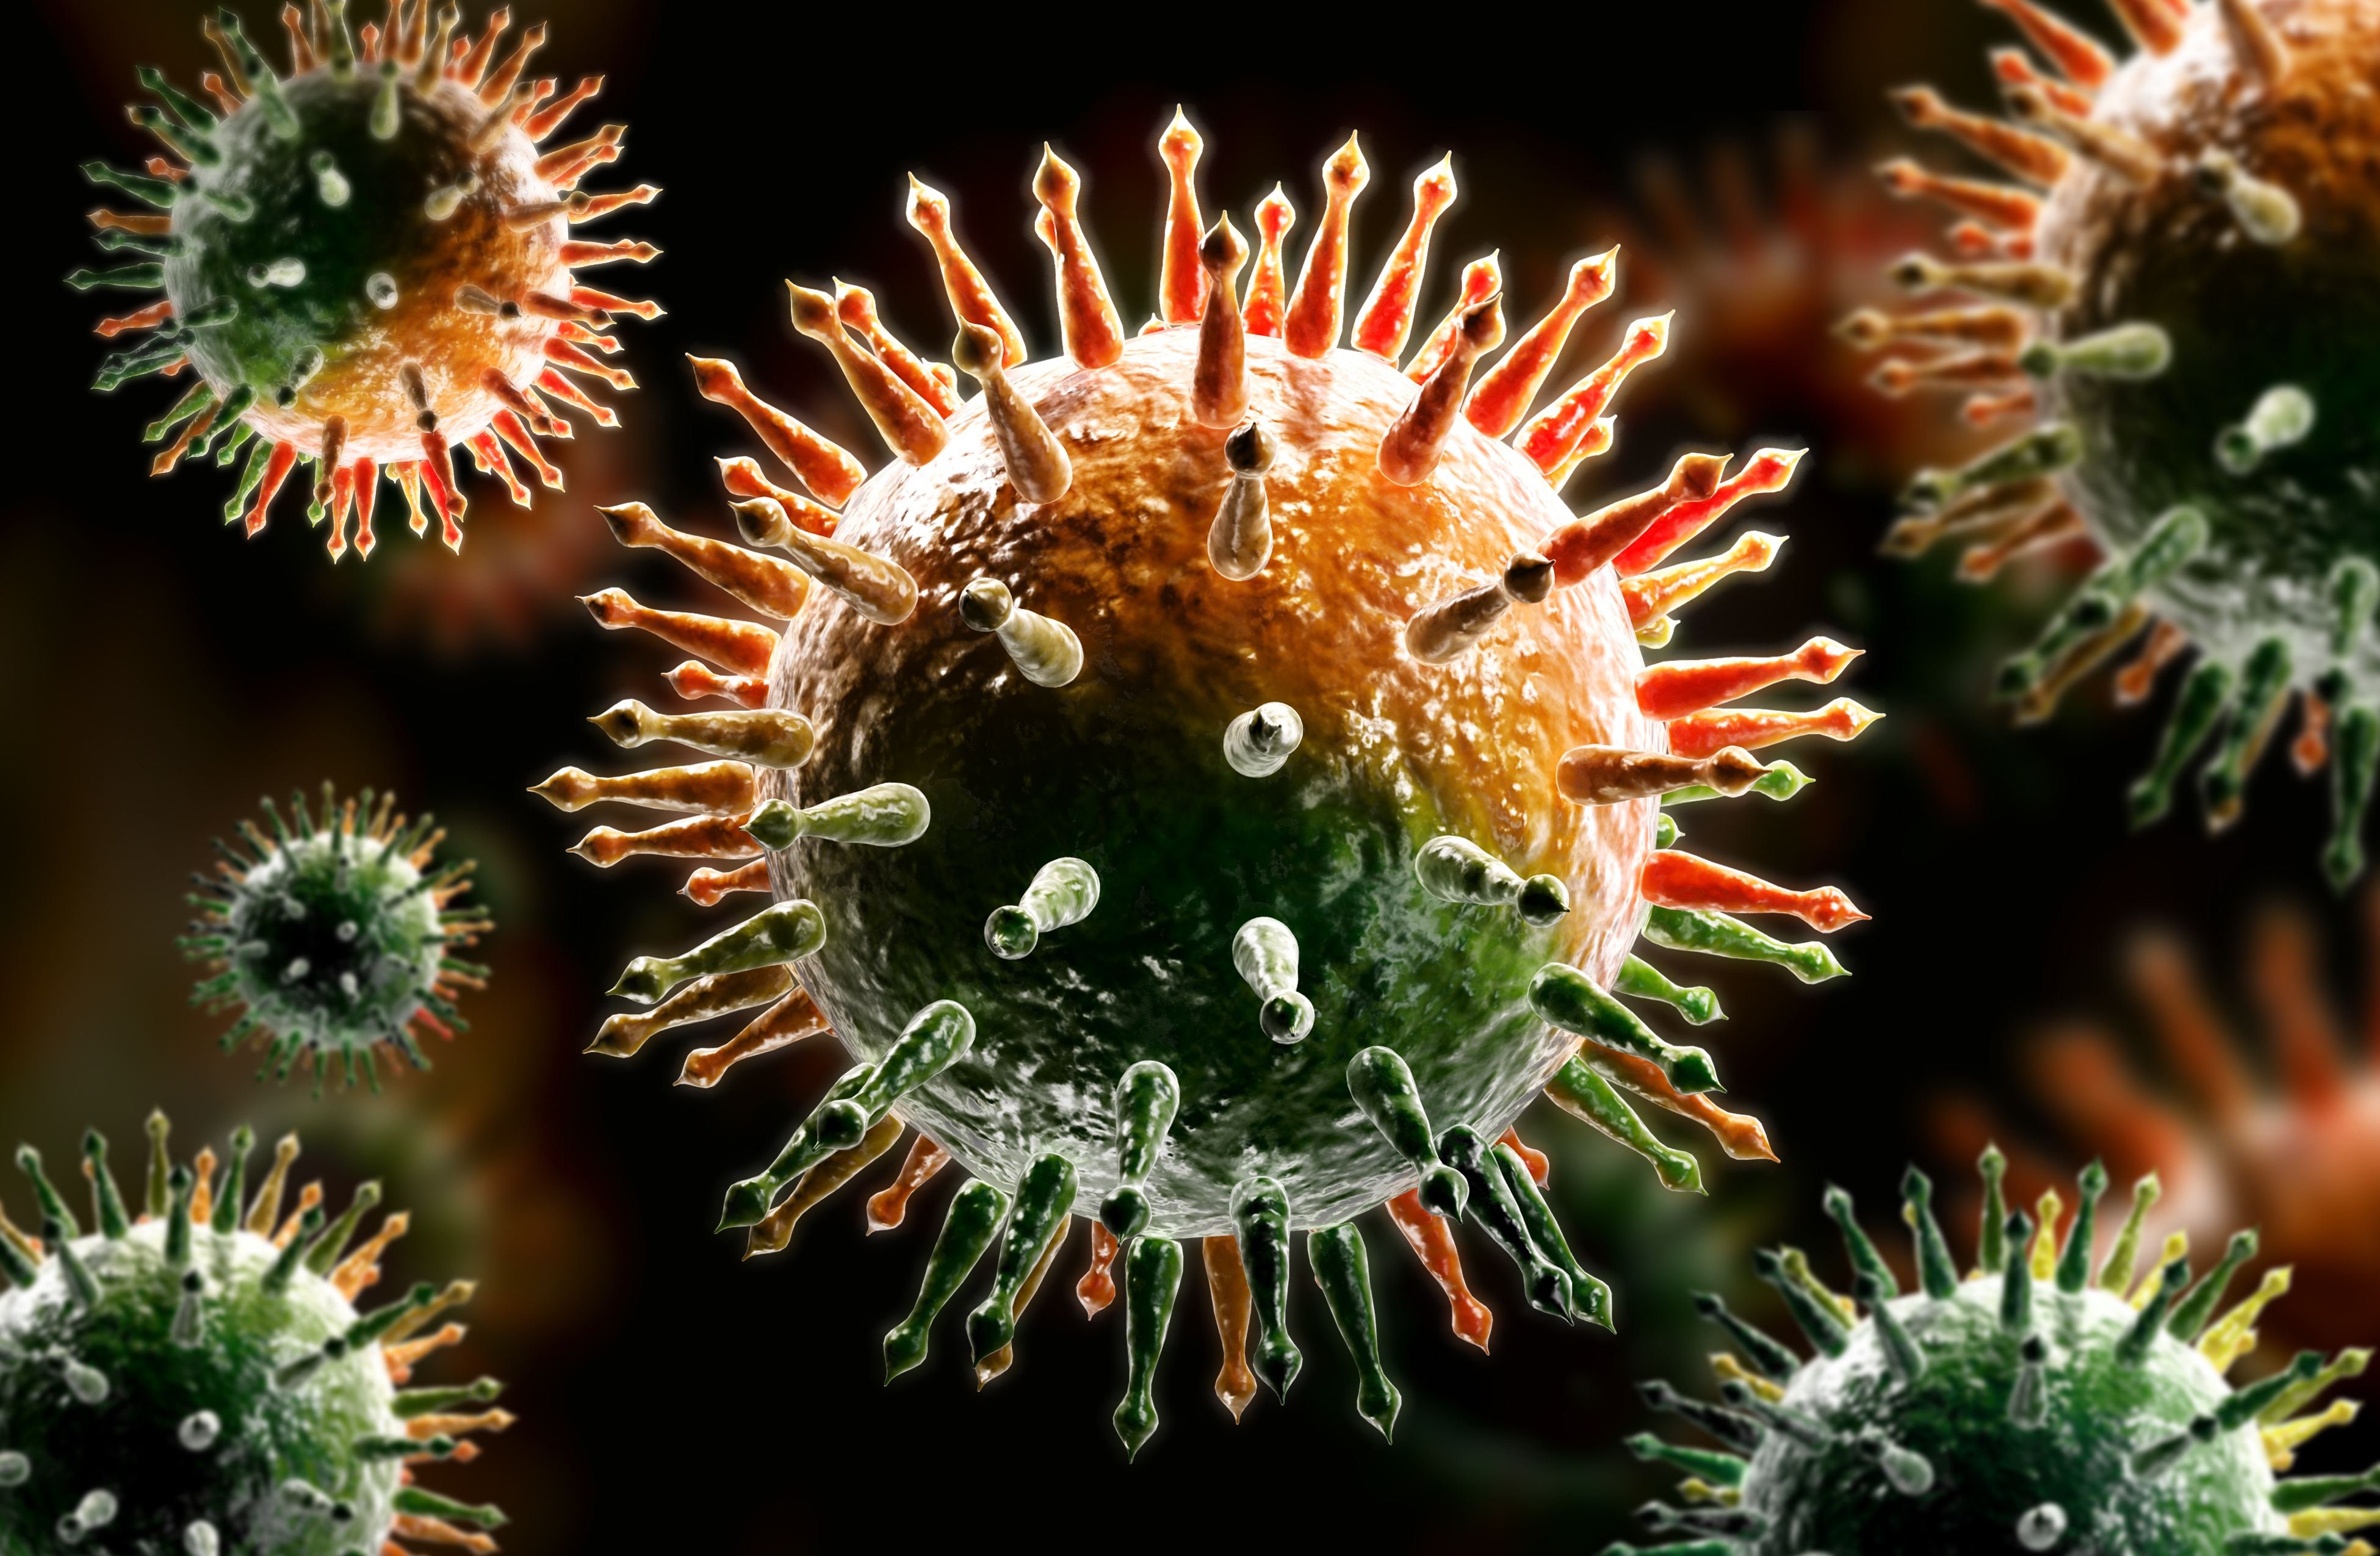 Dünyayı kasıp kavuracak yeni virüs varyantı Omicron (Nu) 8 ülkede tespit edildi! Diğerleri gibi değil, bilim insanlarının açıklamaları yürekleri ağızlara getirecek!